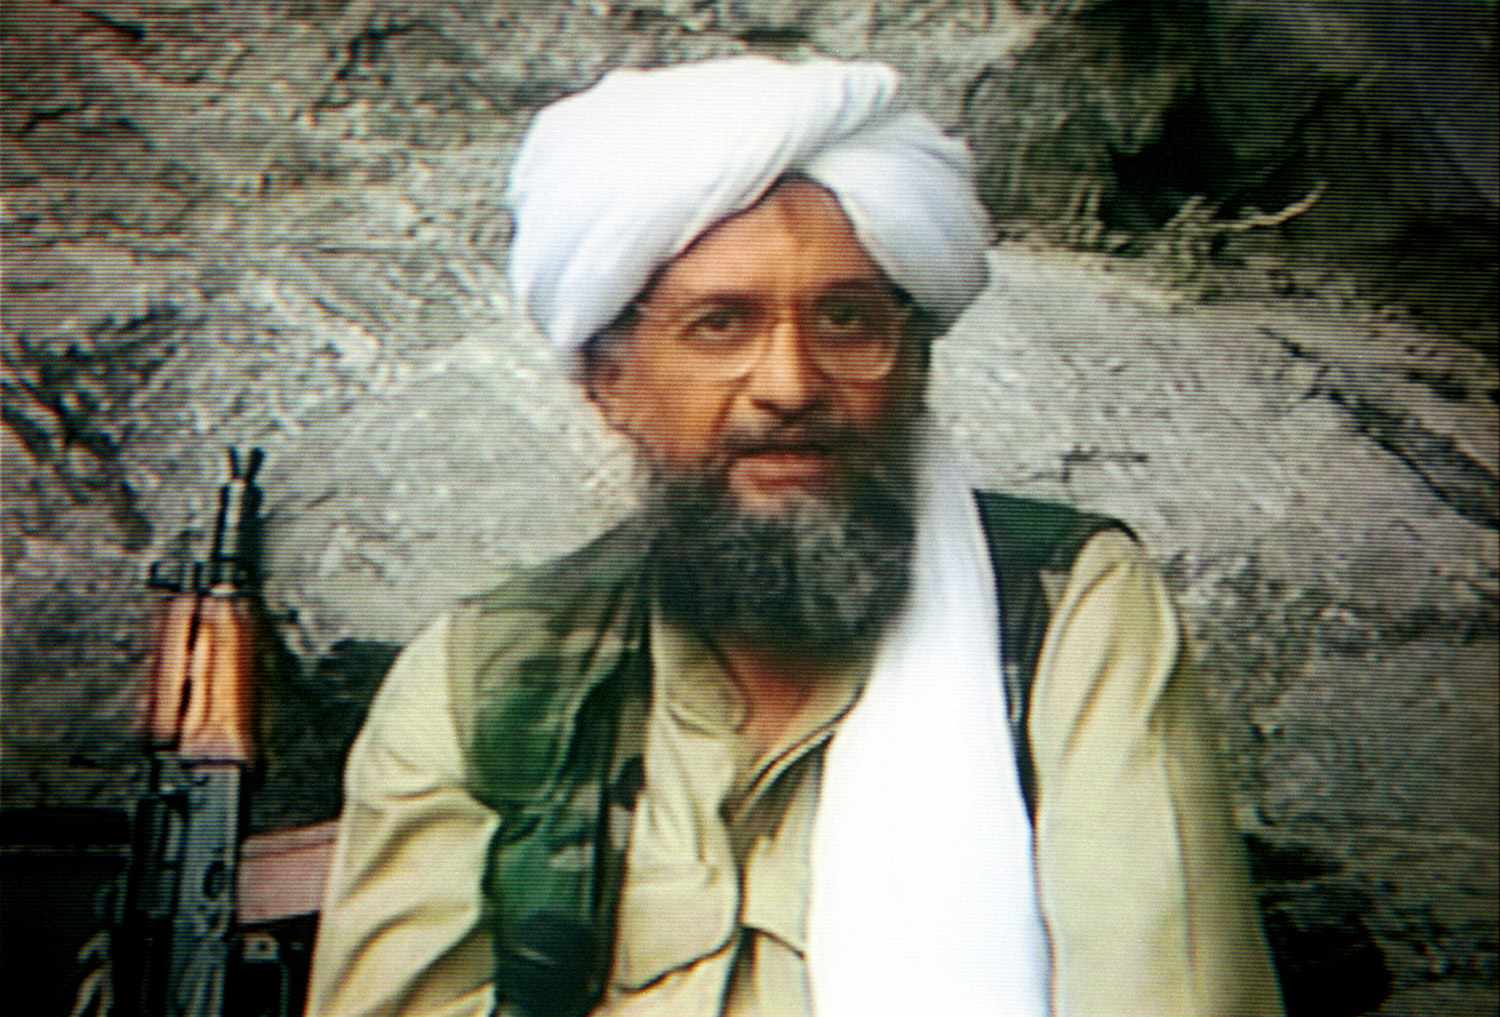 Morto il leader di al Qaeda Ayman al-Zawahiri dopo che gli Stati Uniti. Attacco di droni in Afghanistan: 'Justice Delivered'